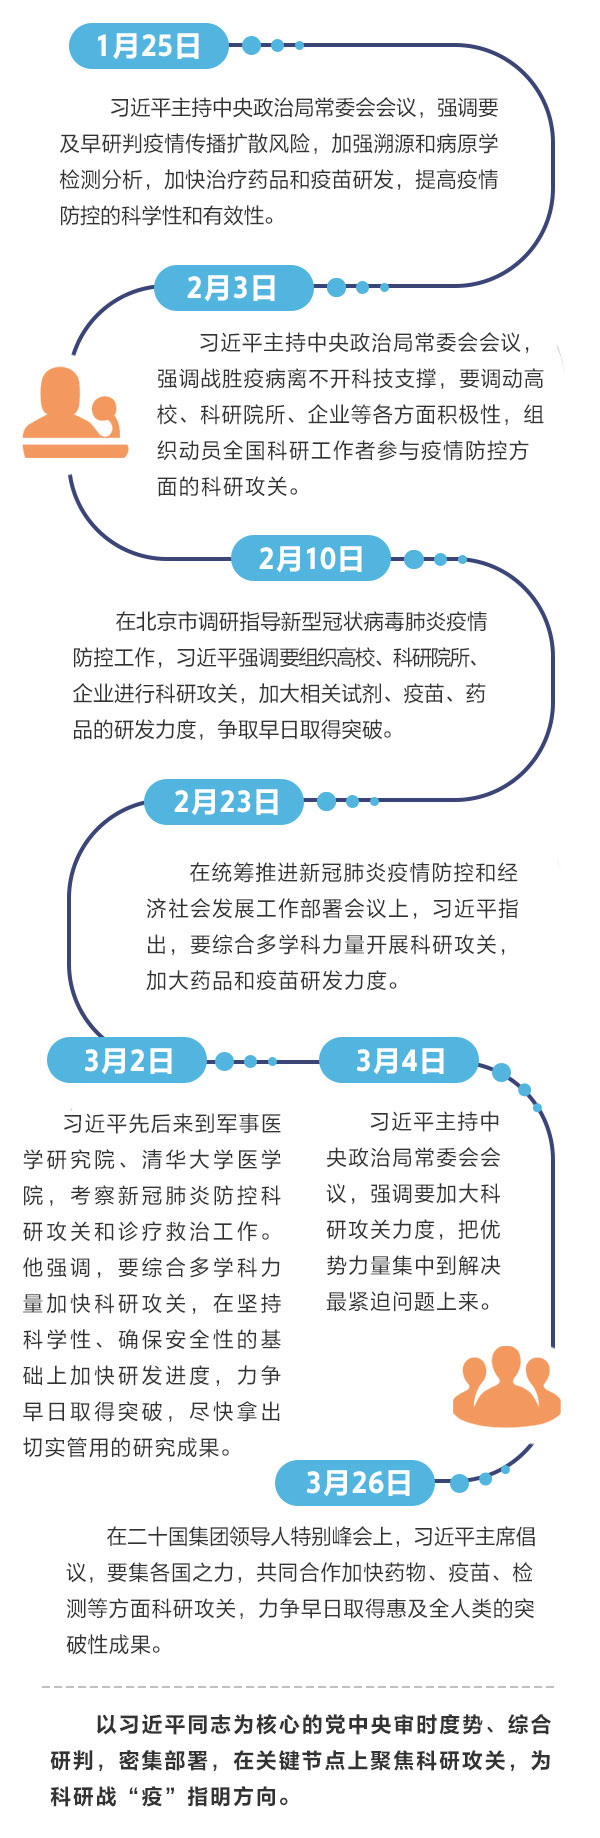 疑是北京大学老师论文代写合同书曝出 北京大学:依规运行调研程序流程